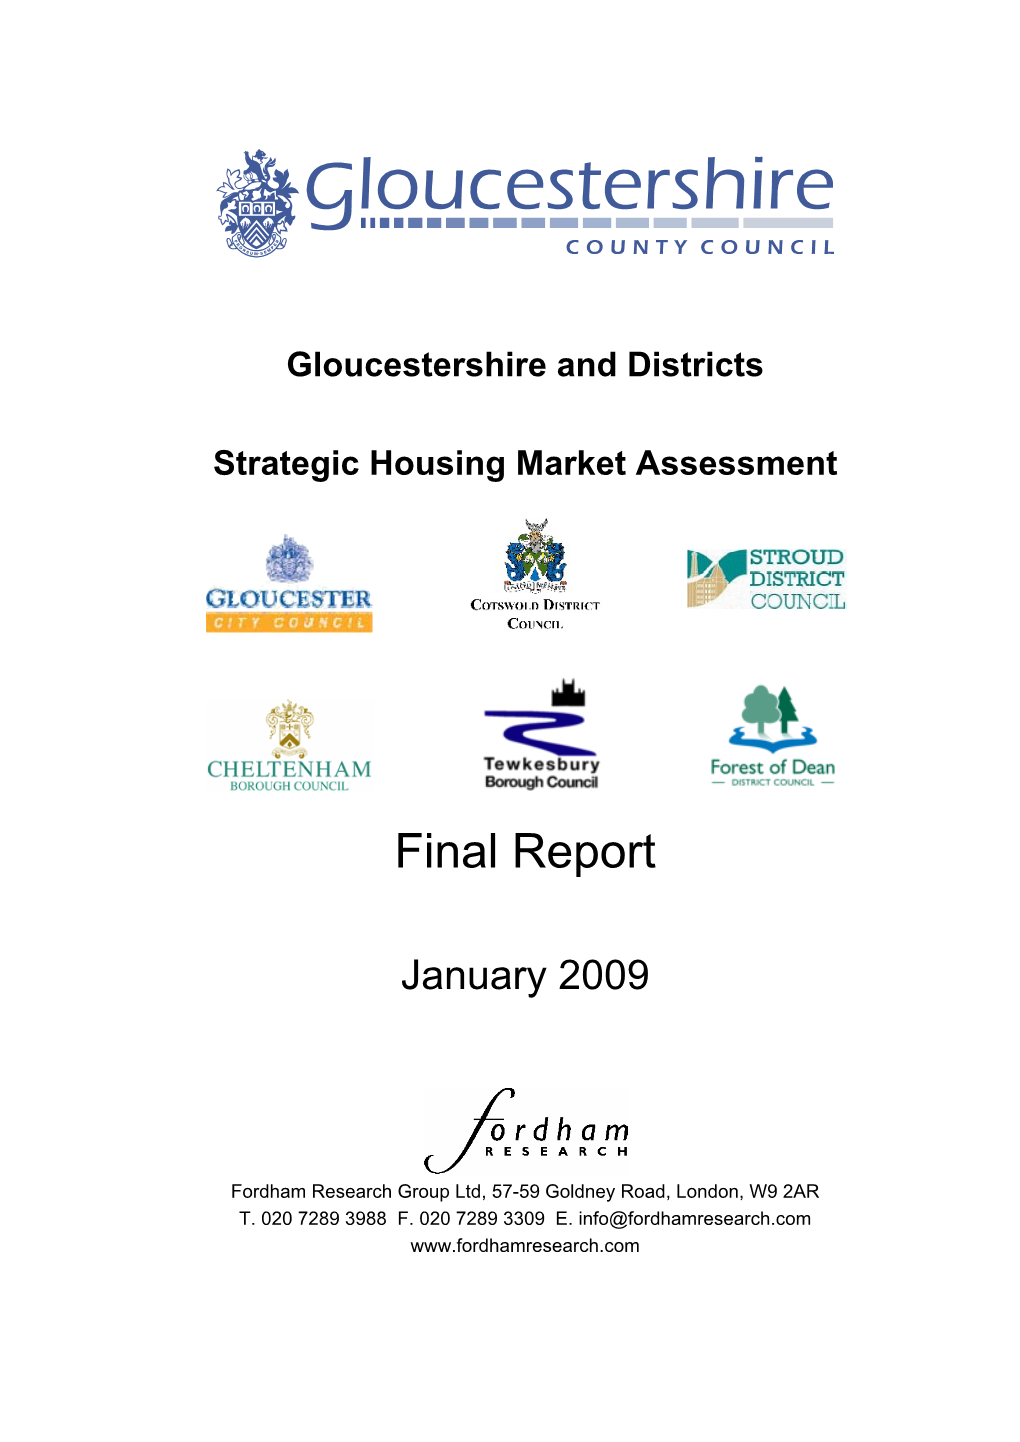 Strategic Housing Market Assessment 2009